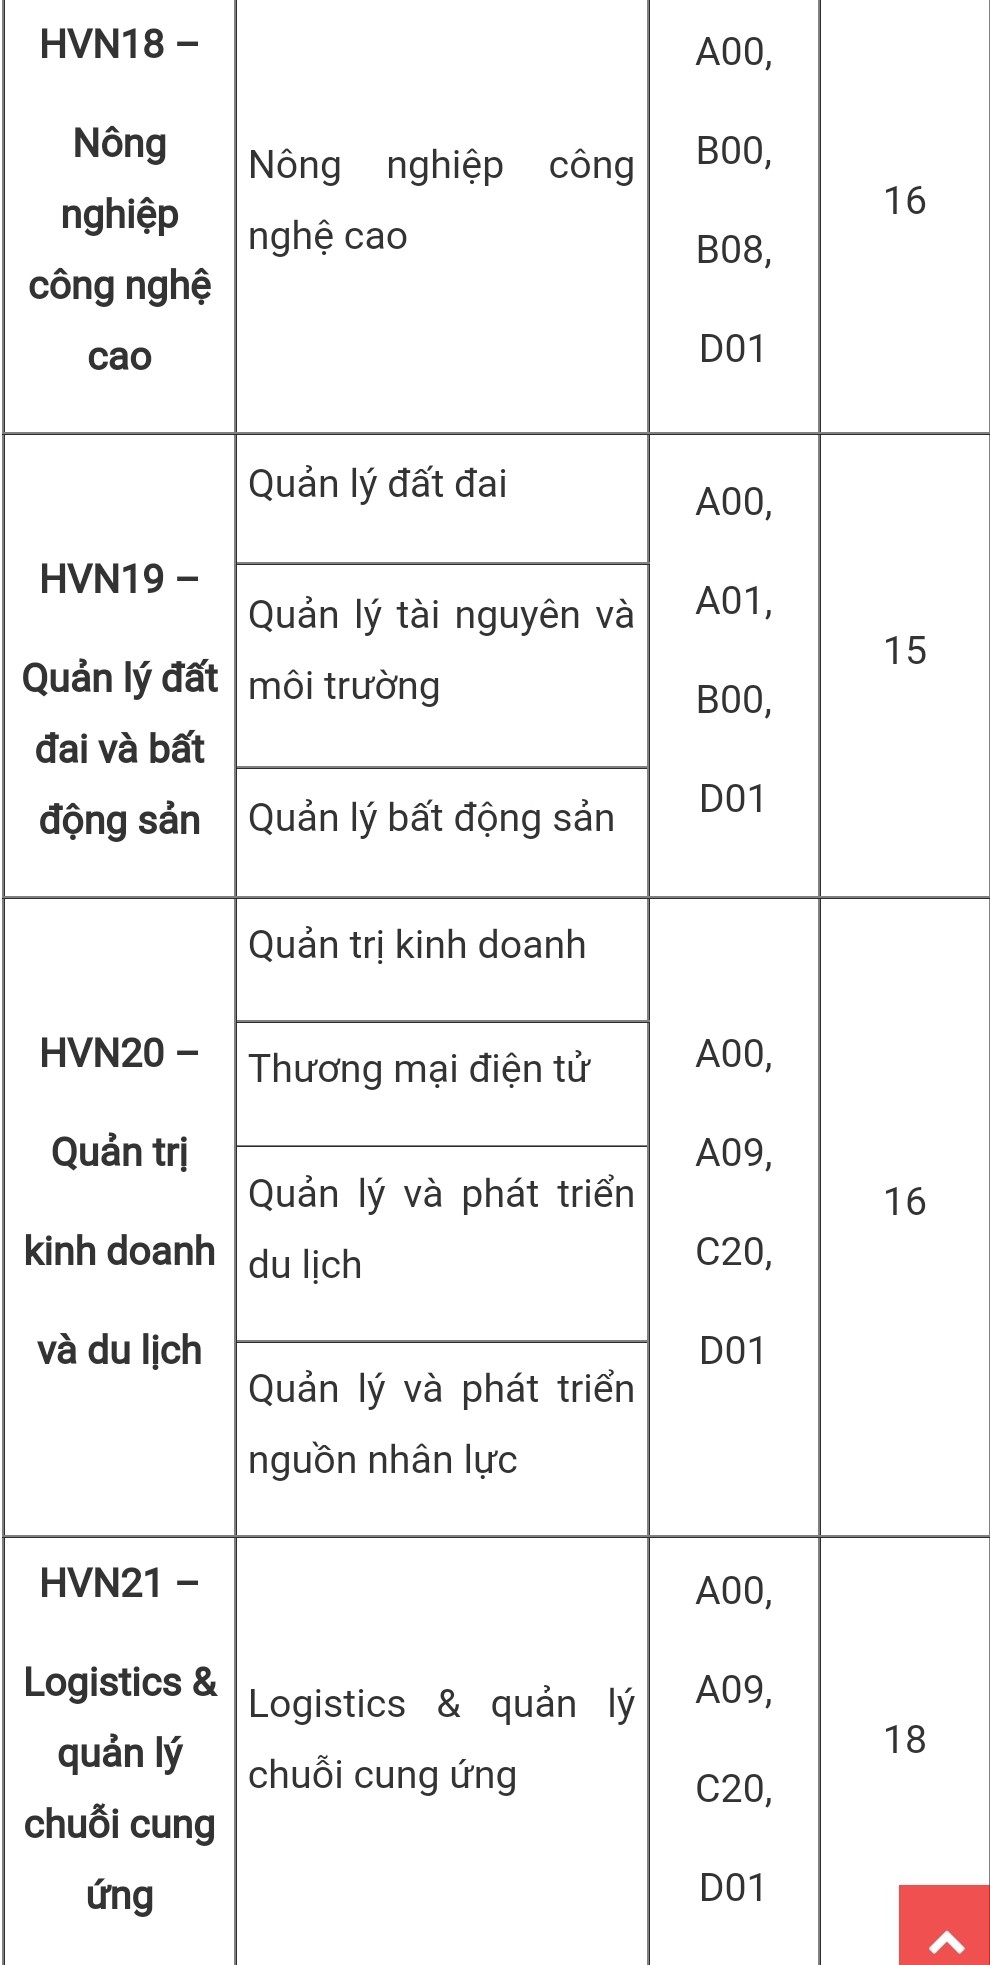 Điểm sàn xét tuyển của Học viện Nông nghiệp Việt Nam cao nhất là 22